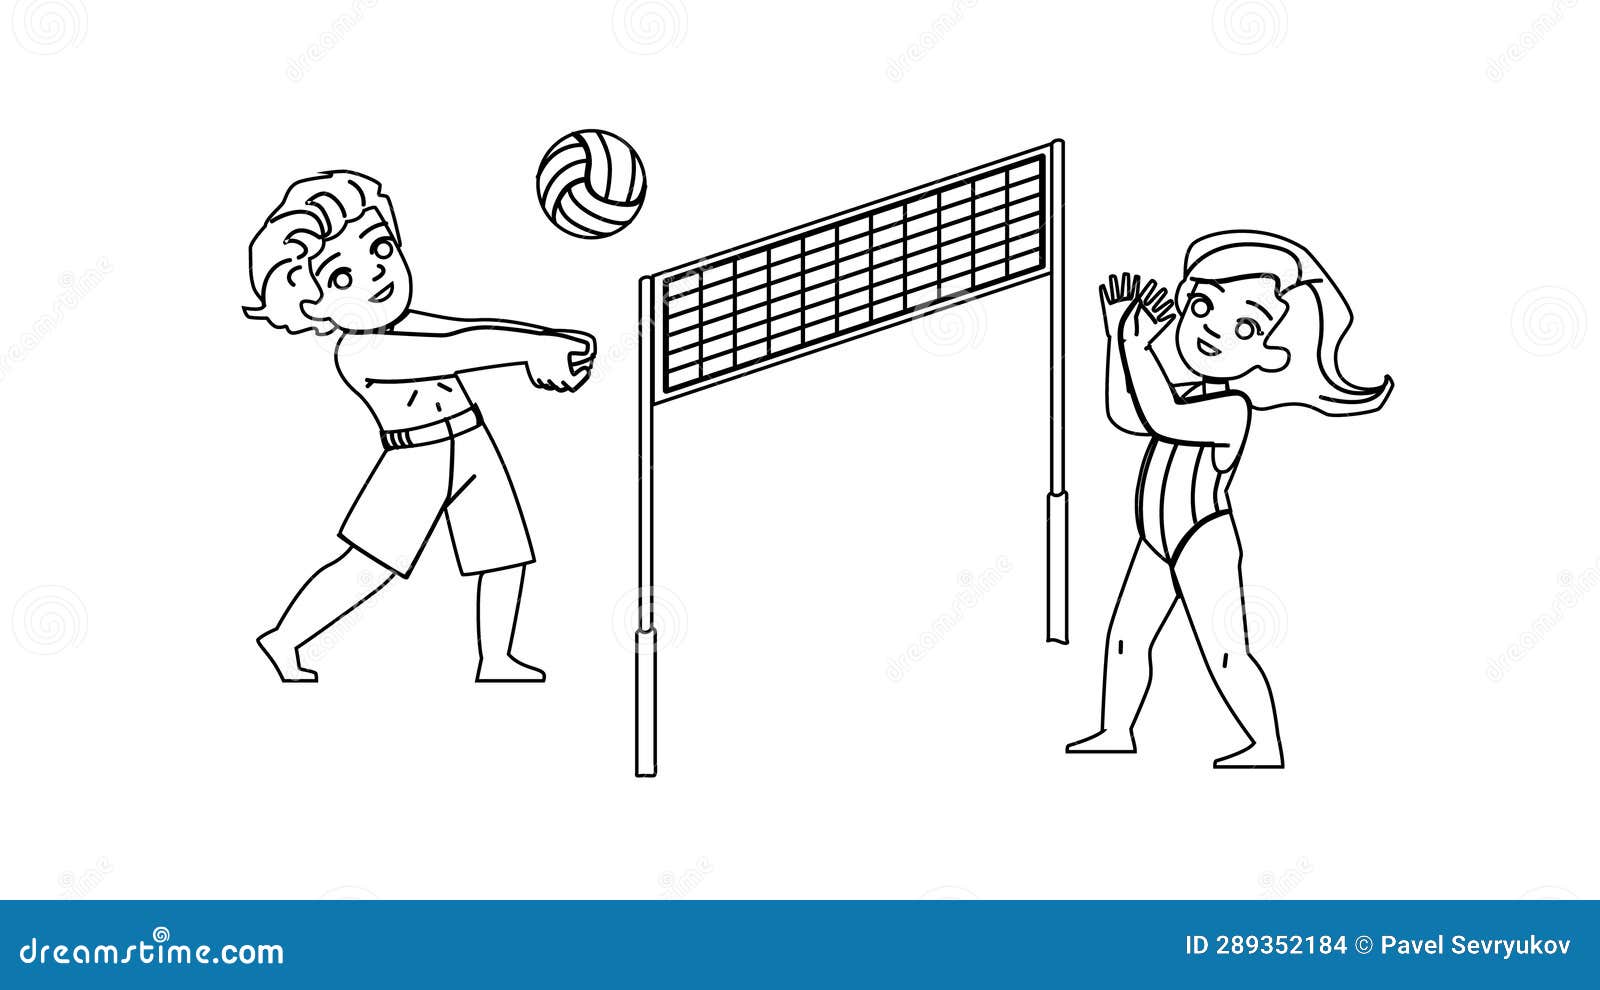 Ilustração de pessoas jogando vôlei na praia